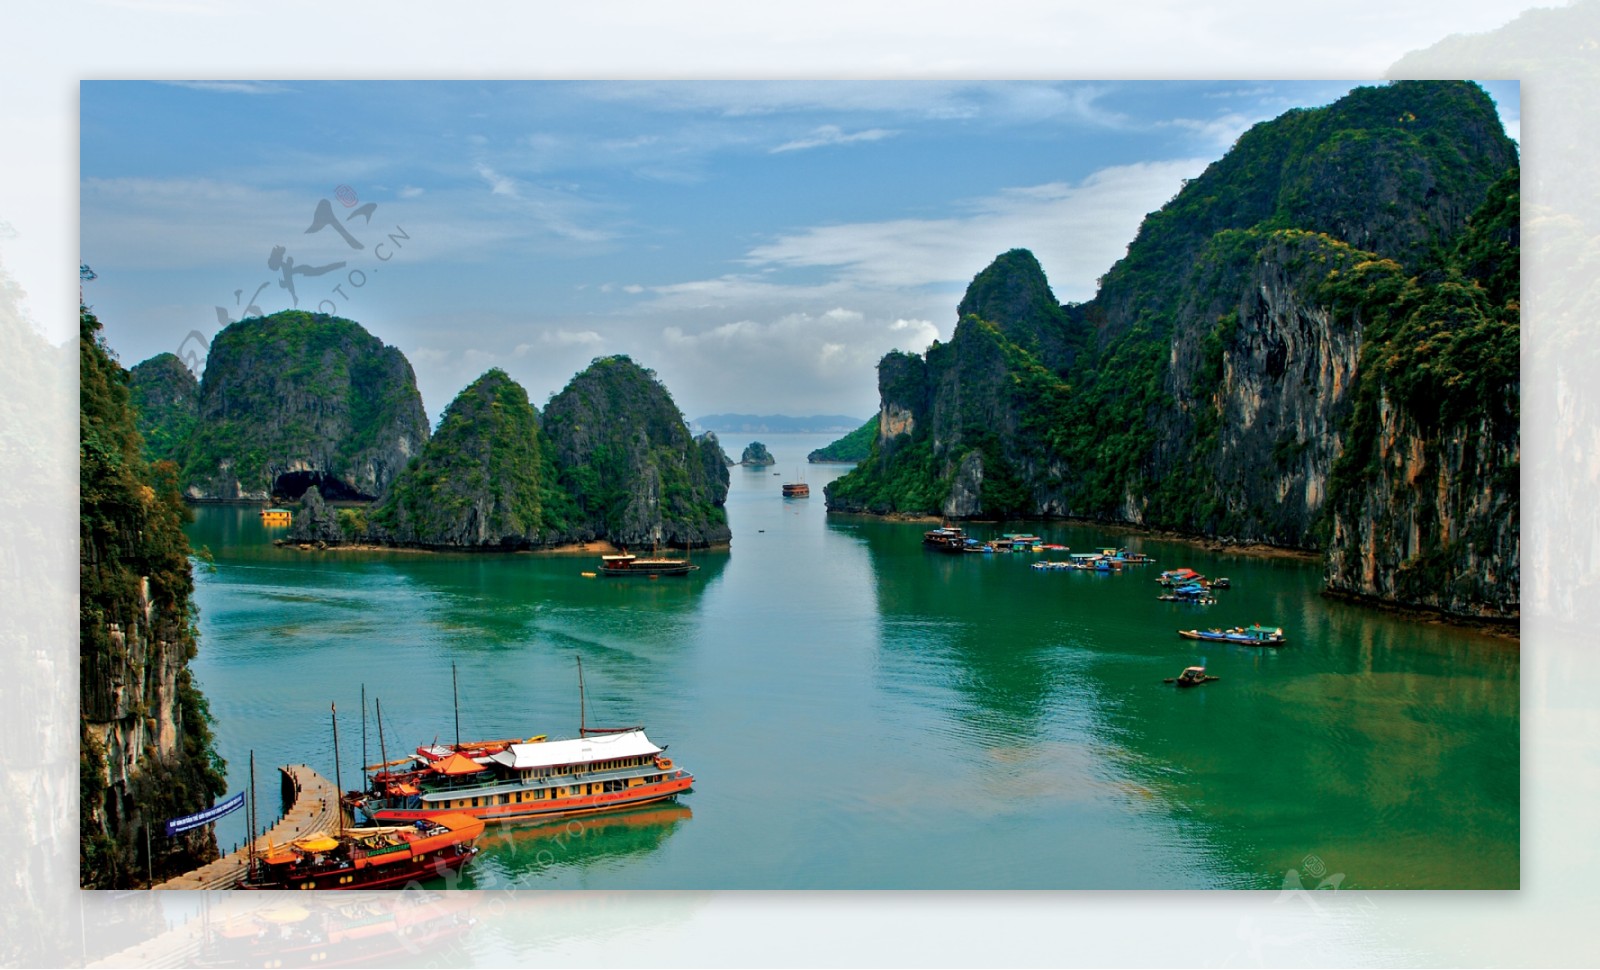 越南山水风景图片